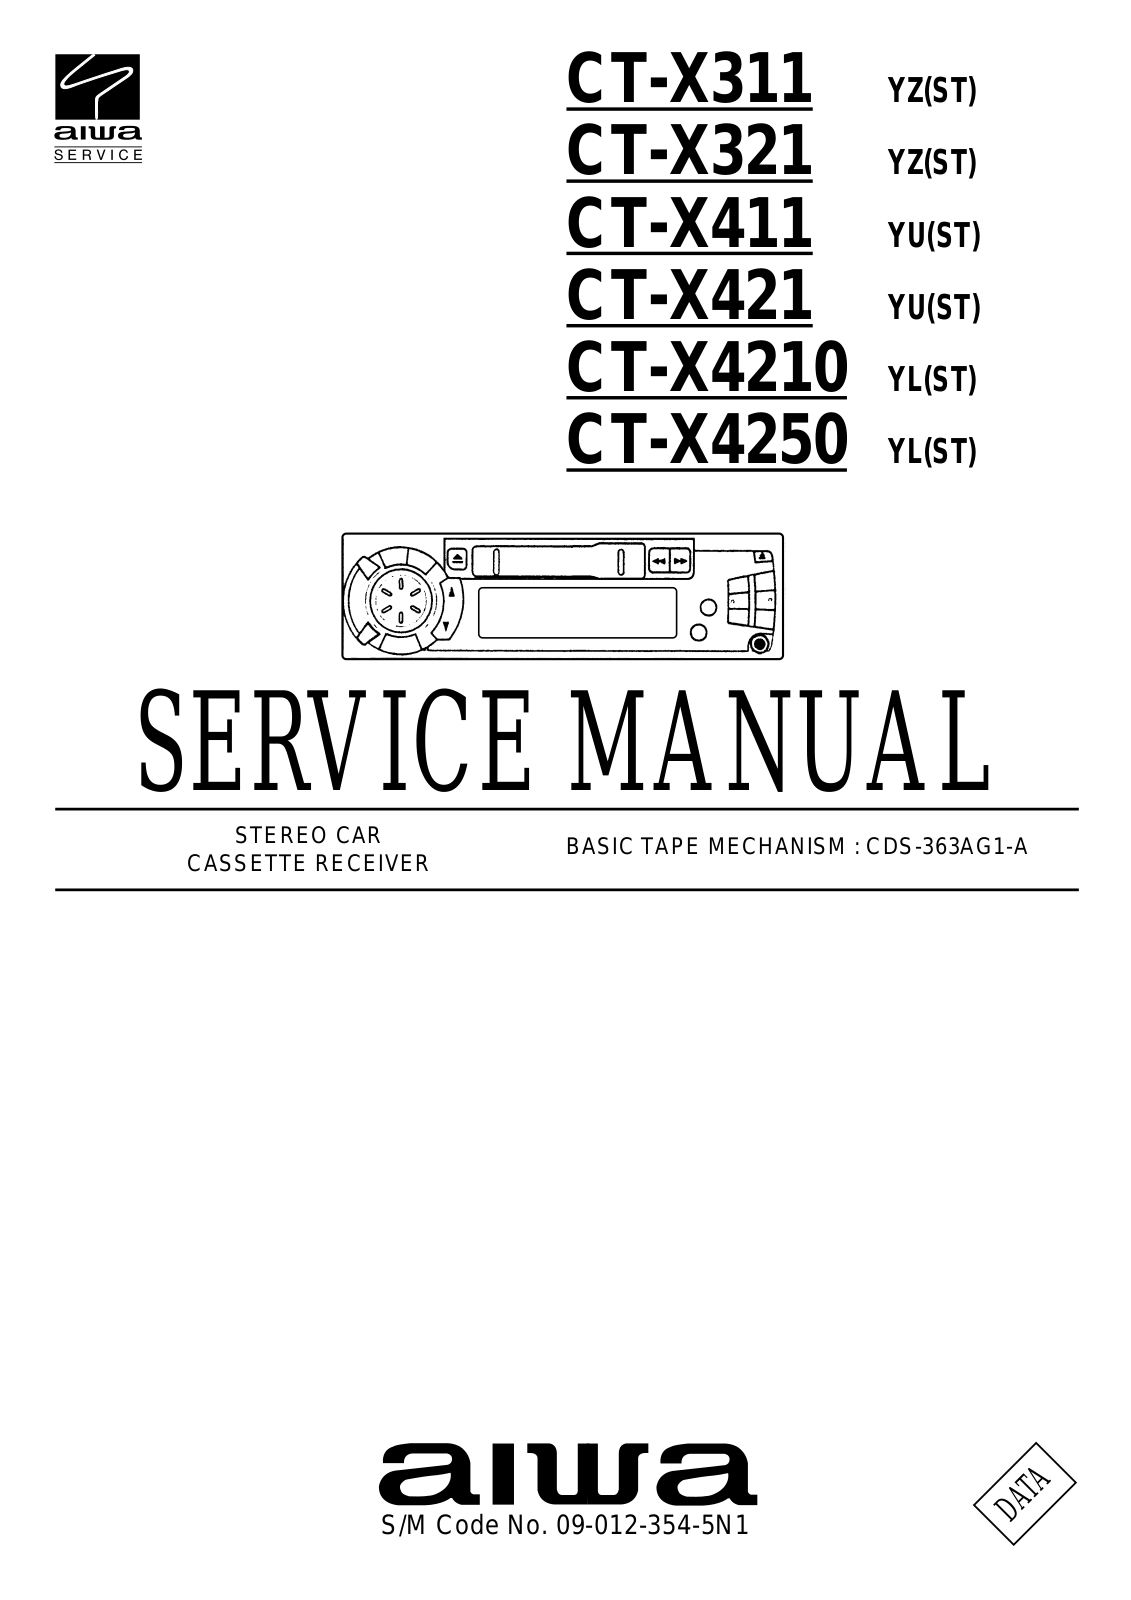 Aiwa CT-X311, CT-X411, CT-X421, CT-X4210, CT-X4250 Service Manual